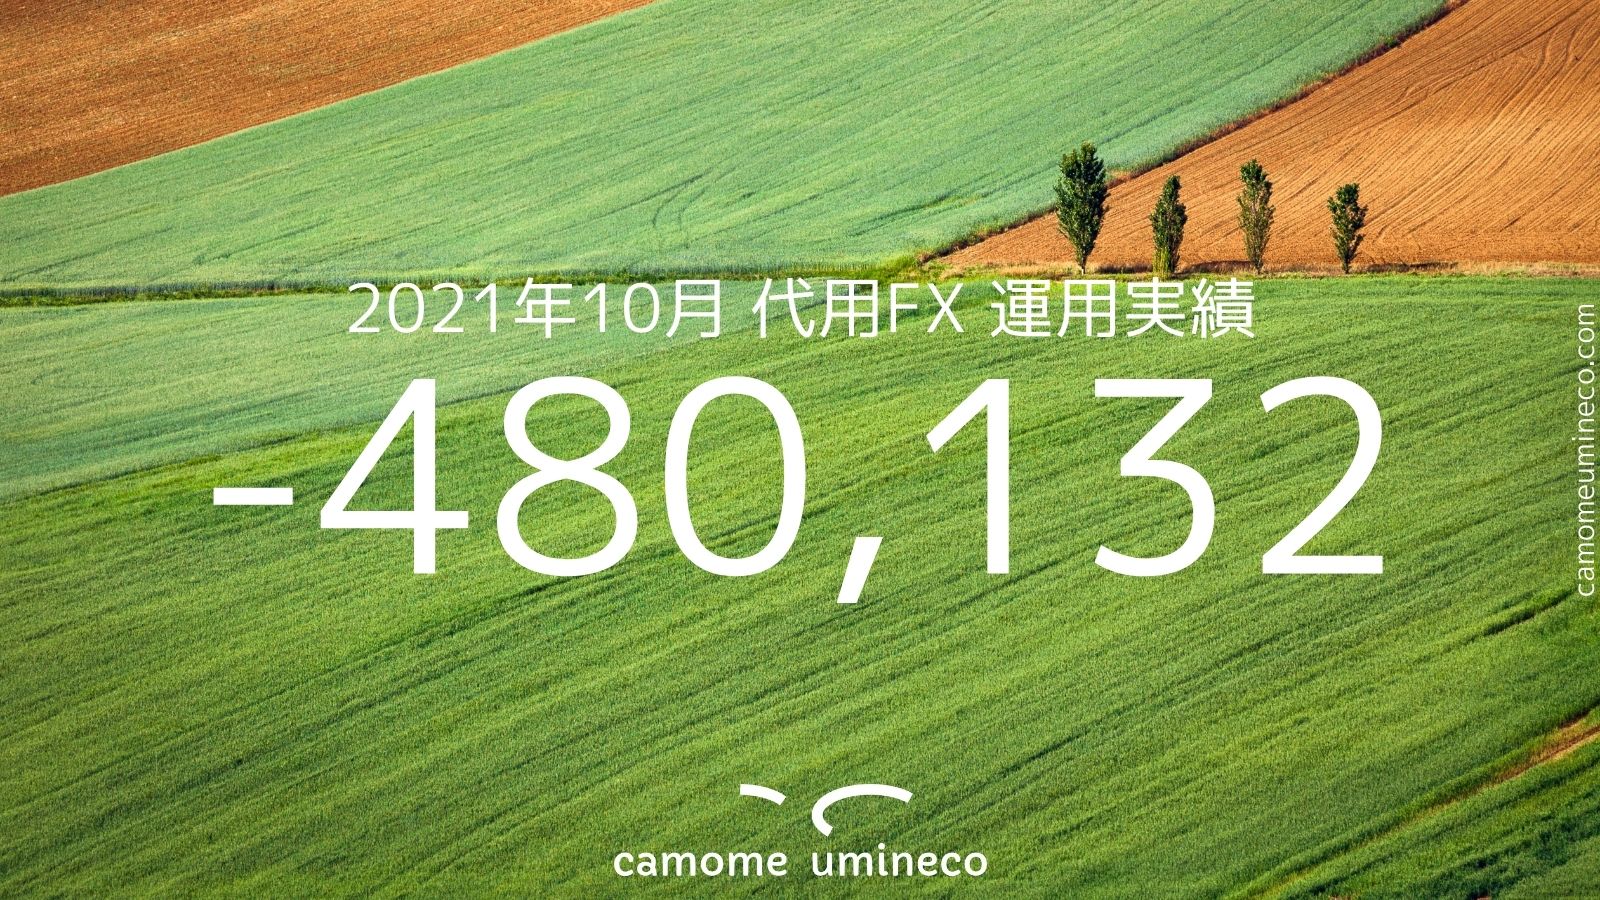 【DMM】2021年10月 代用FX 運用実績 -480,132円